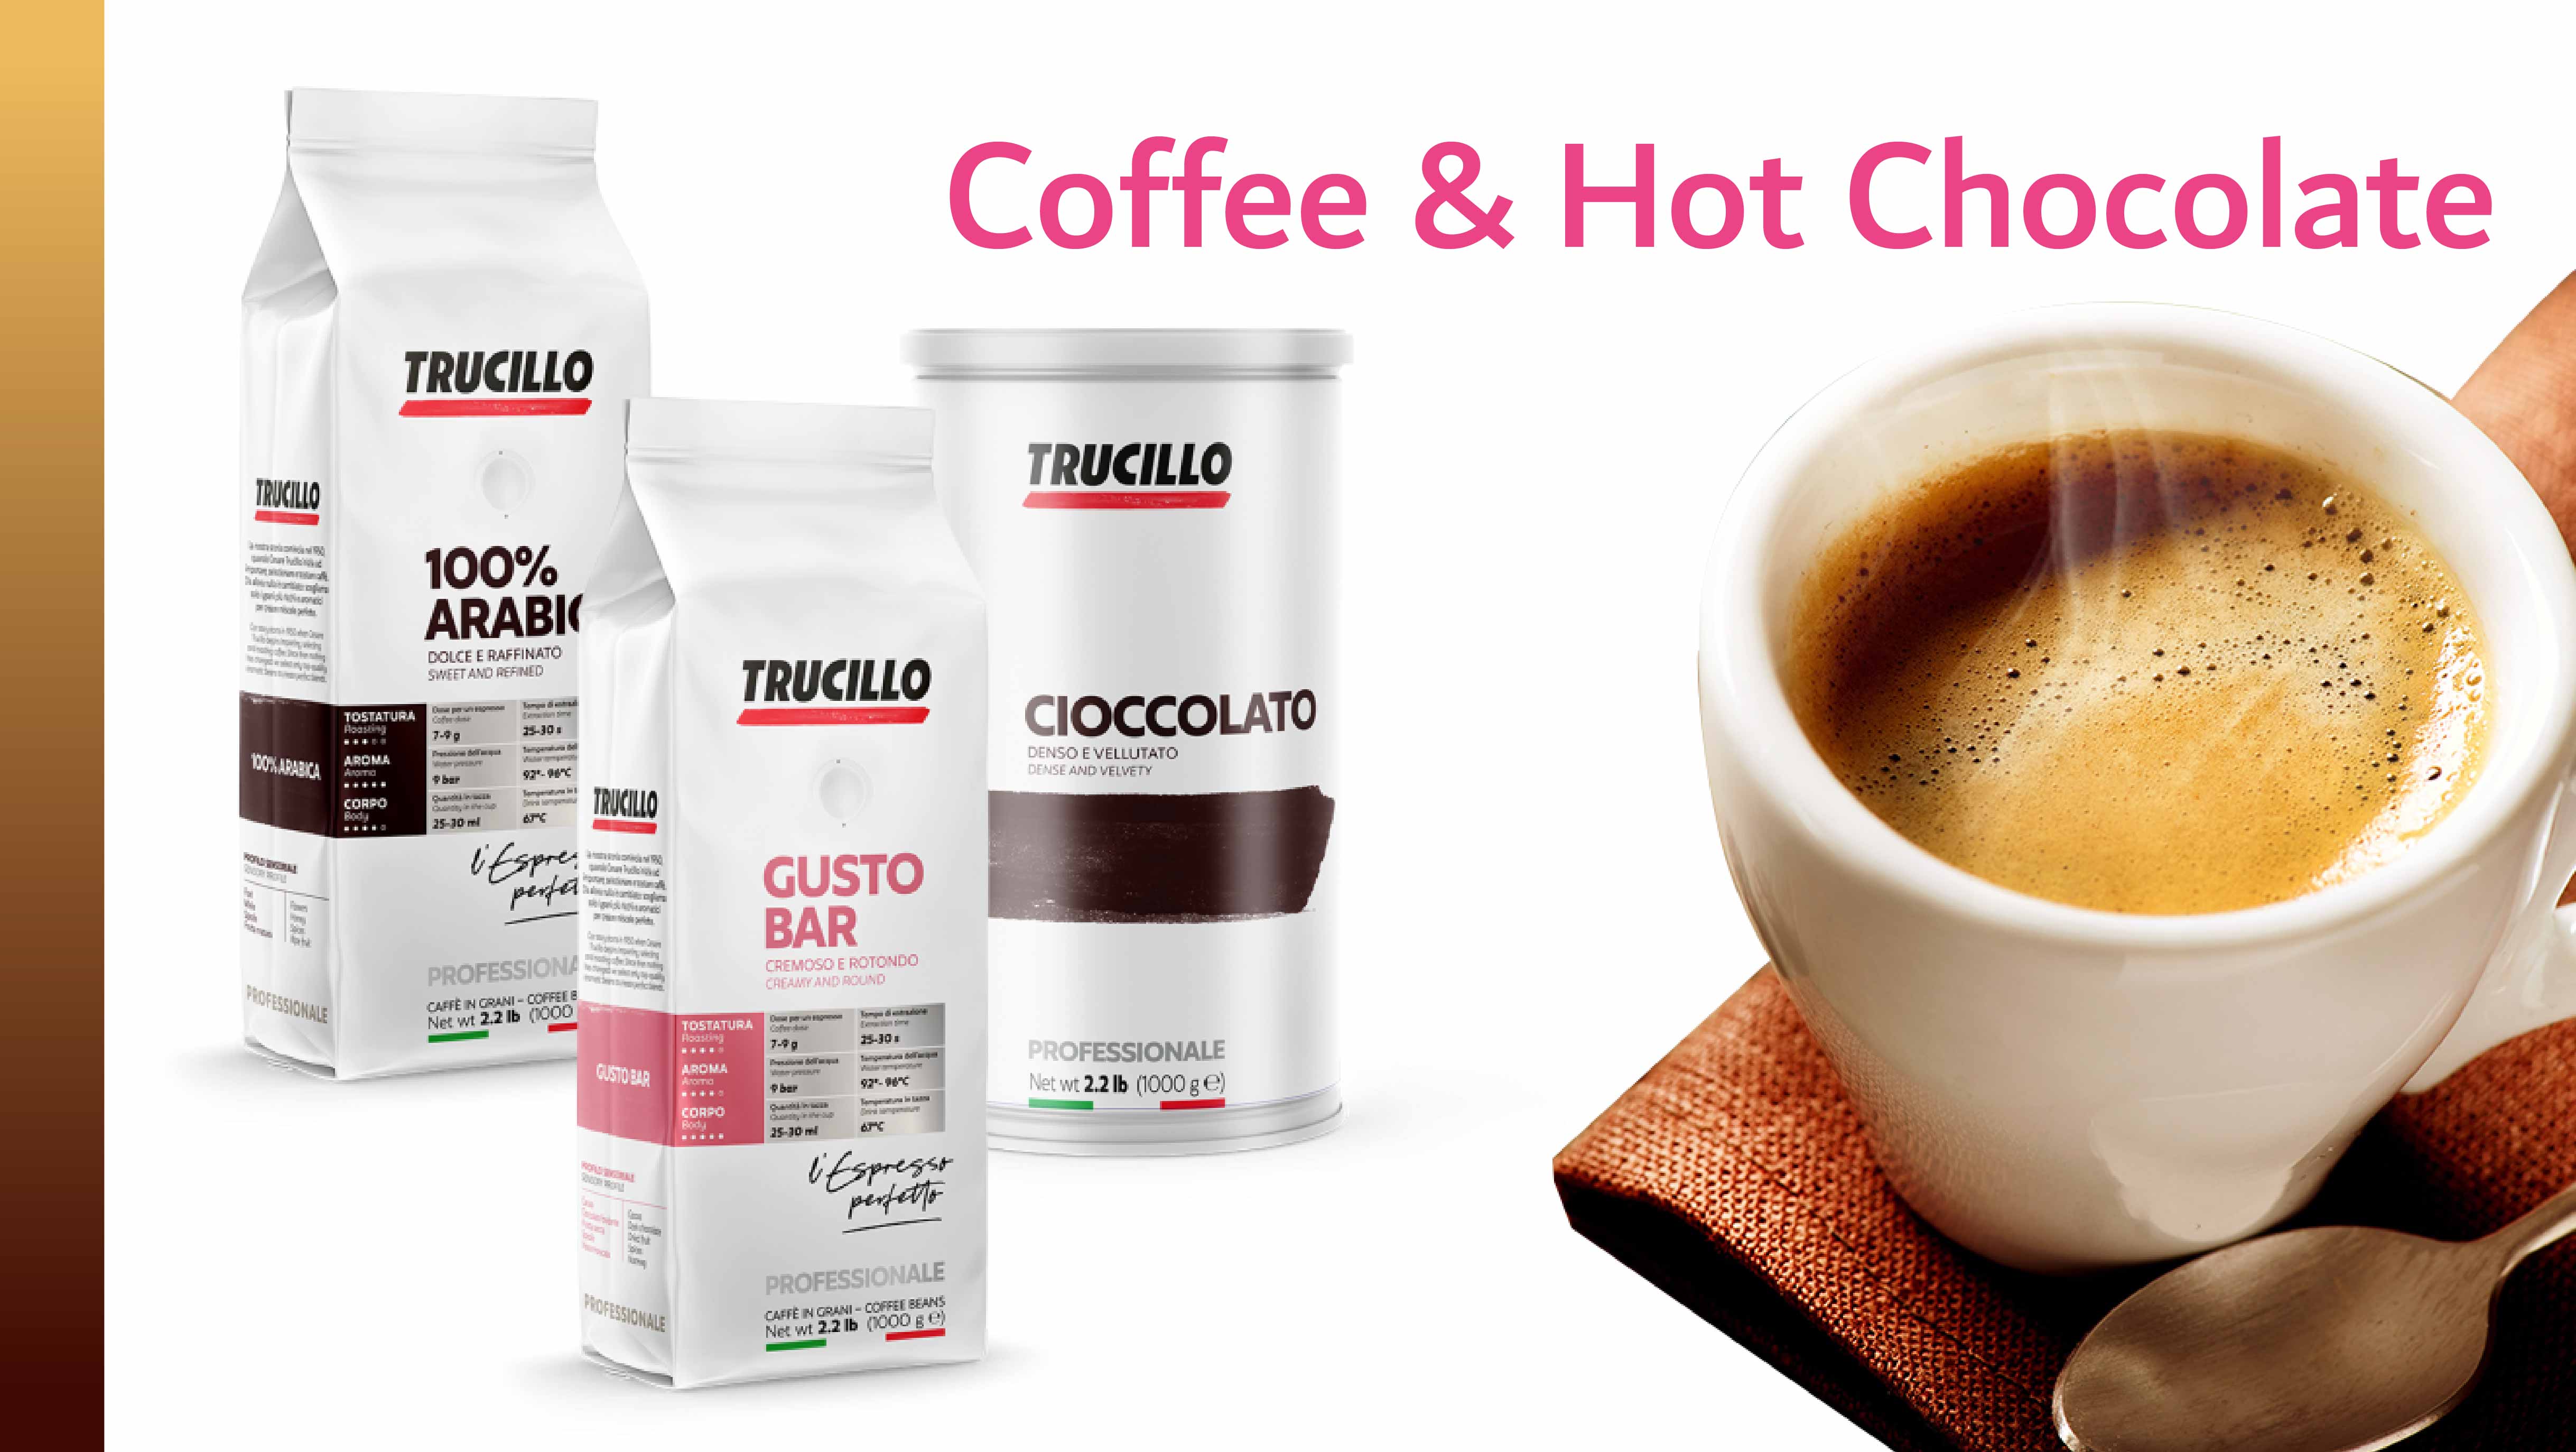 Coffee & Hot Chocolate